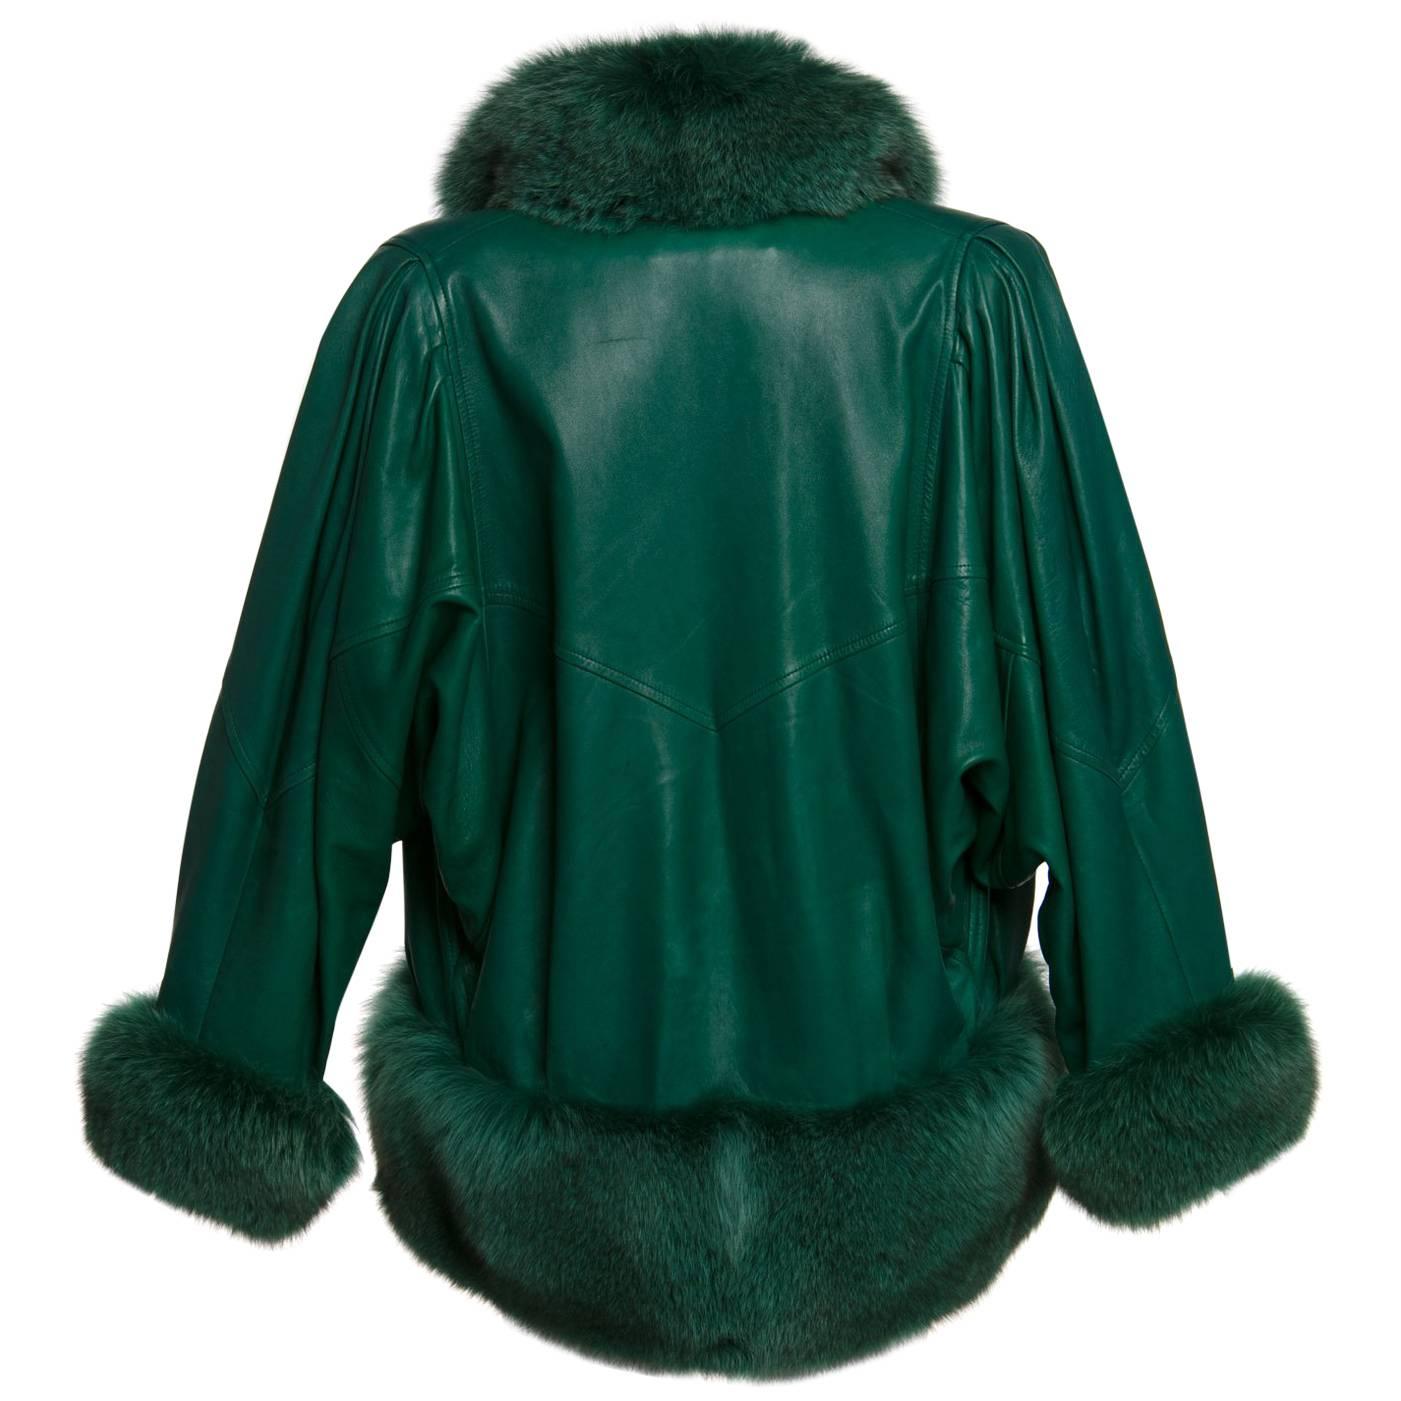 1980s Jean Claude Jitrois Jewel Green Leather Dolman Sleeve Fox Fur Trimmed Coat